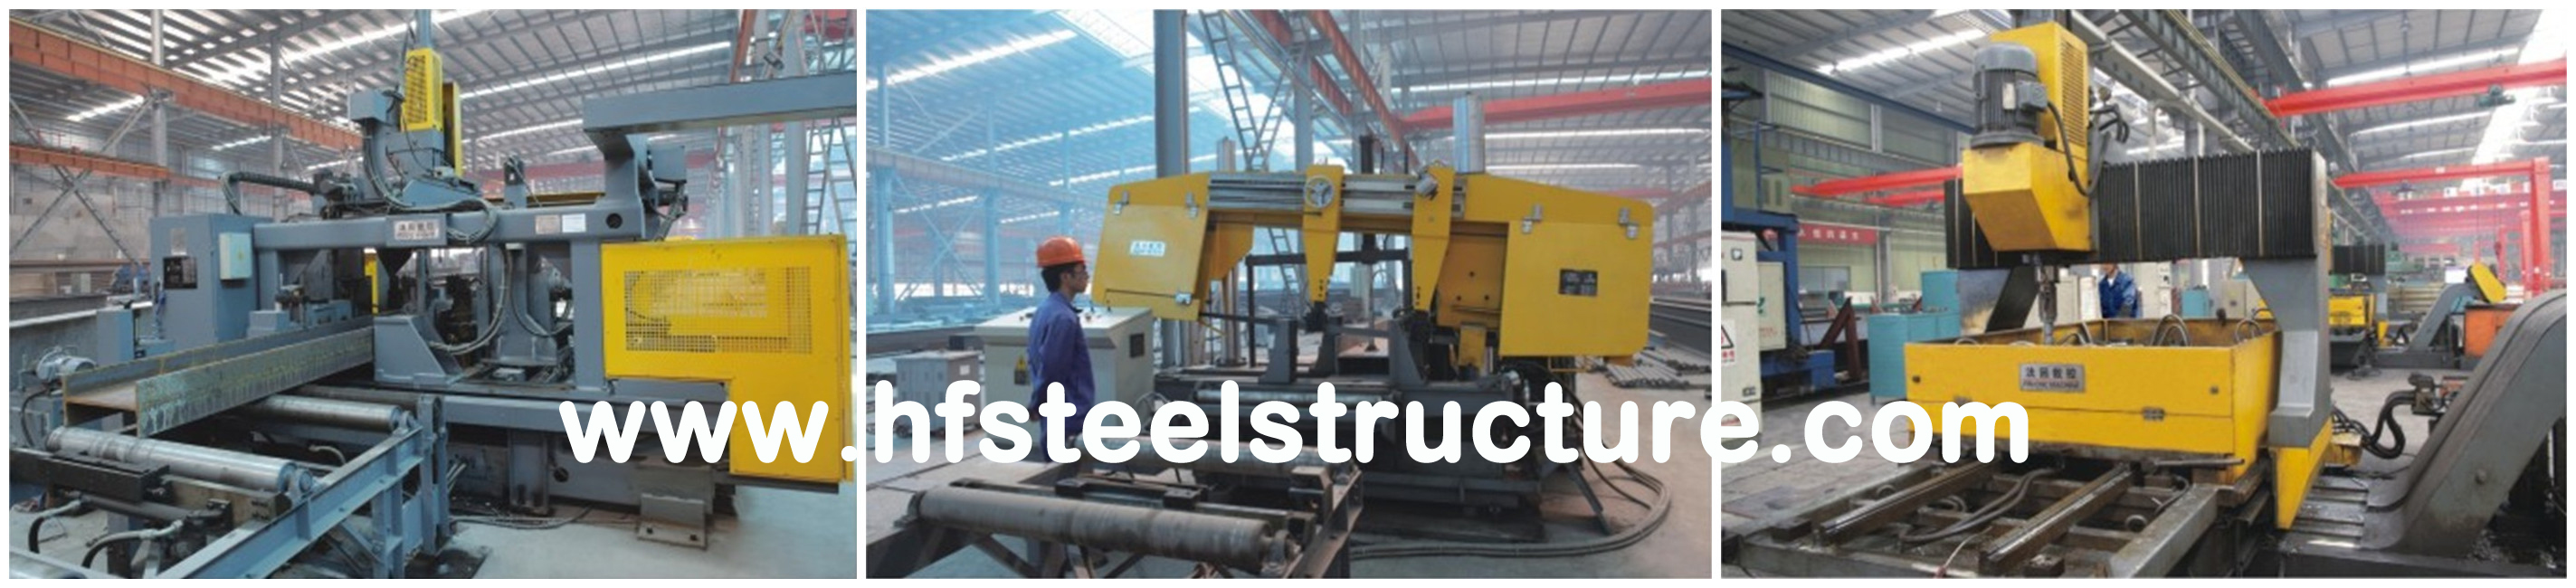 Подгонянные конструкция и изготовление SteelBuilding пакгауза промышленные